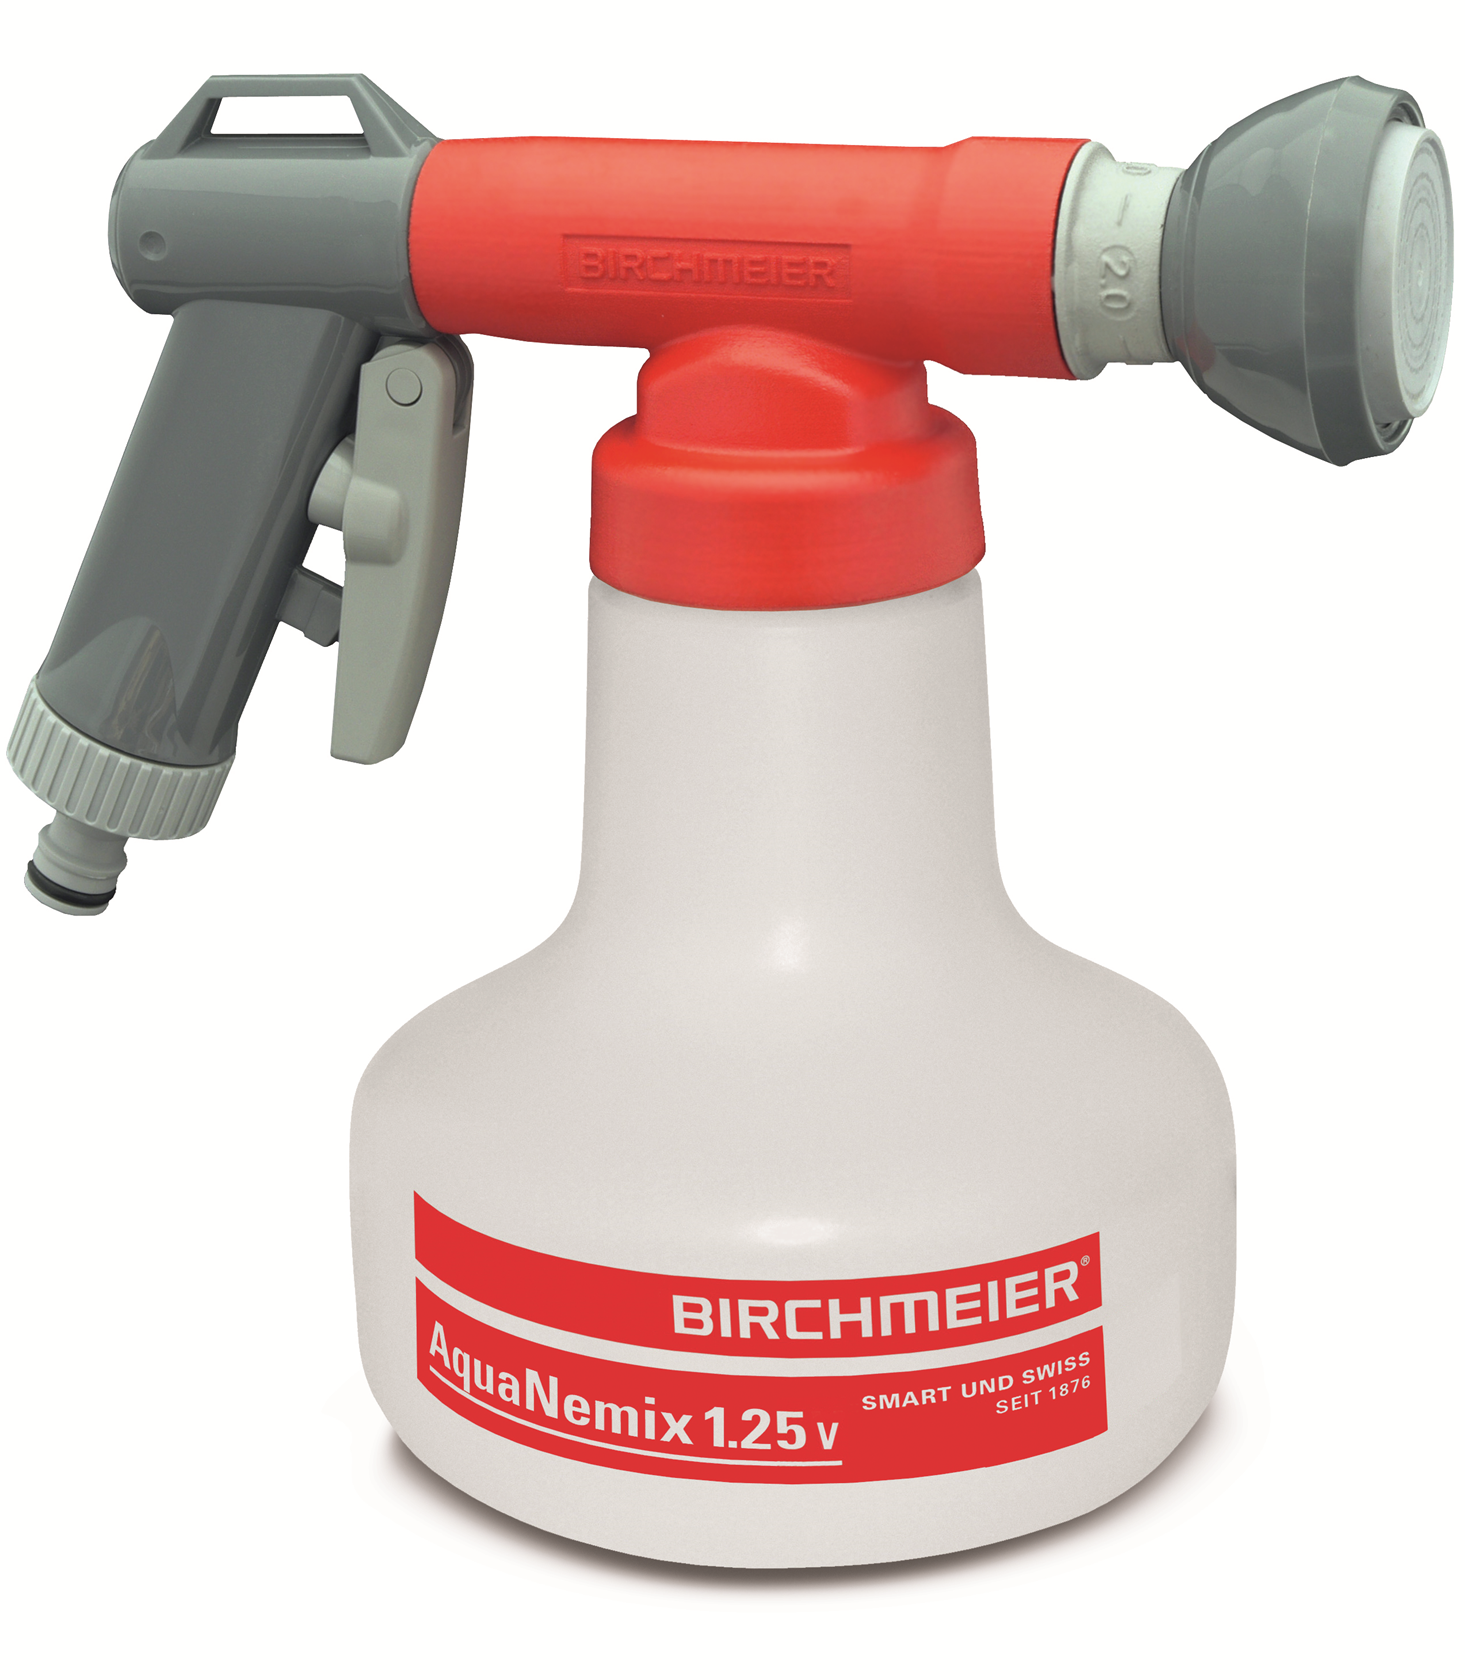 Birchmeier Aquanemix 1.25V : Mixing device for nematodes (Nematodes)